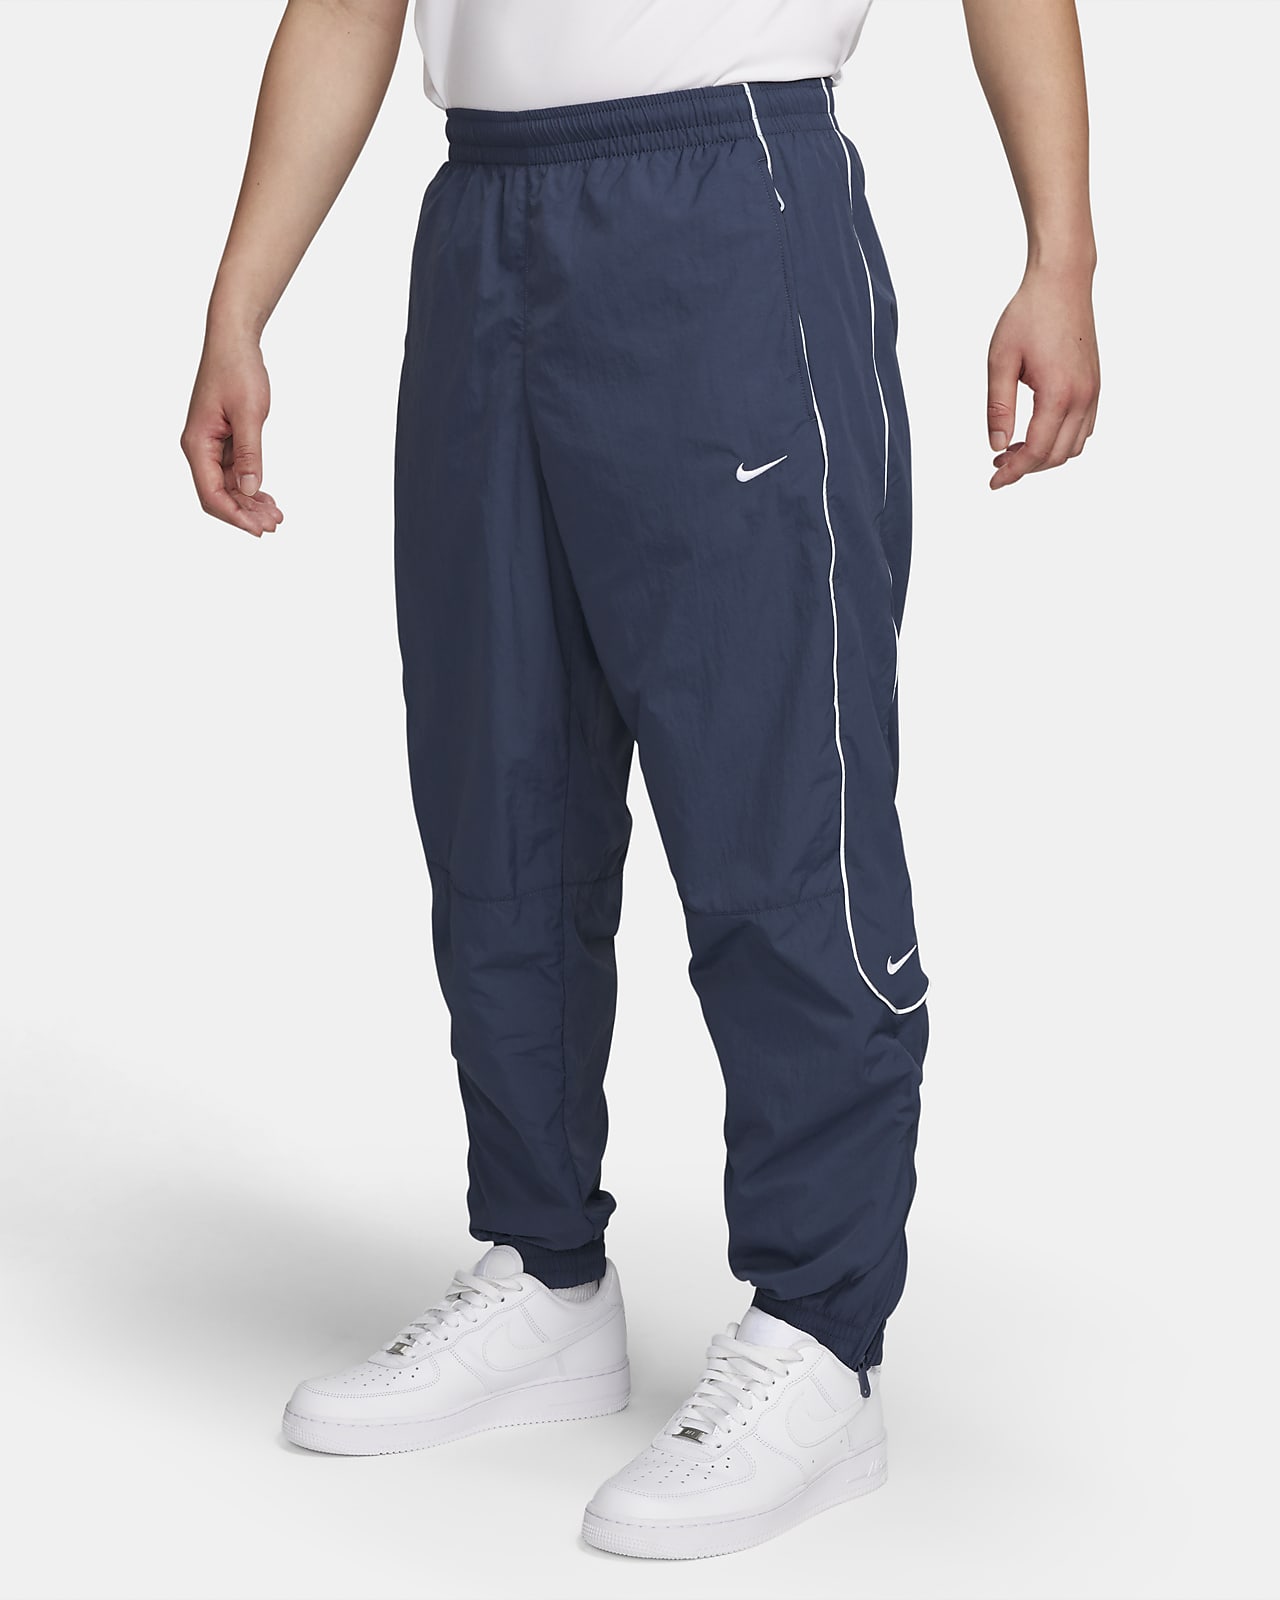 กางเกงวอร์มขายาวผู้ชาย Nike Solo Swoosh